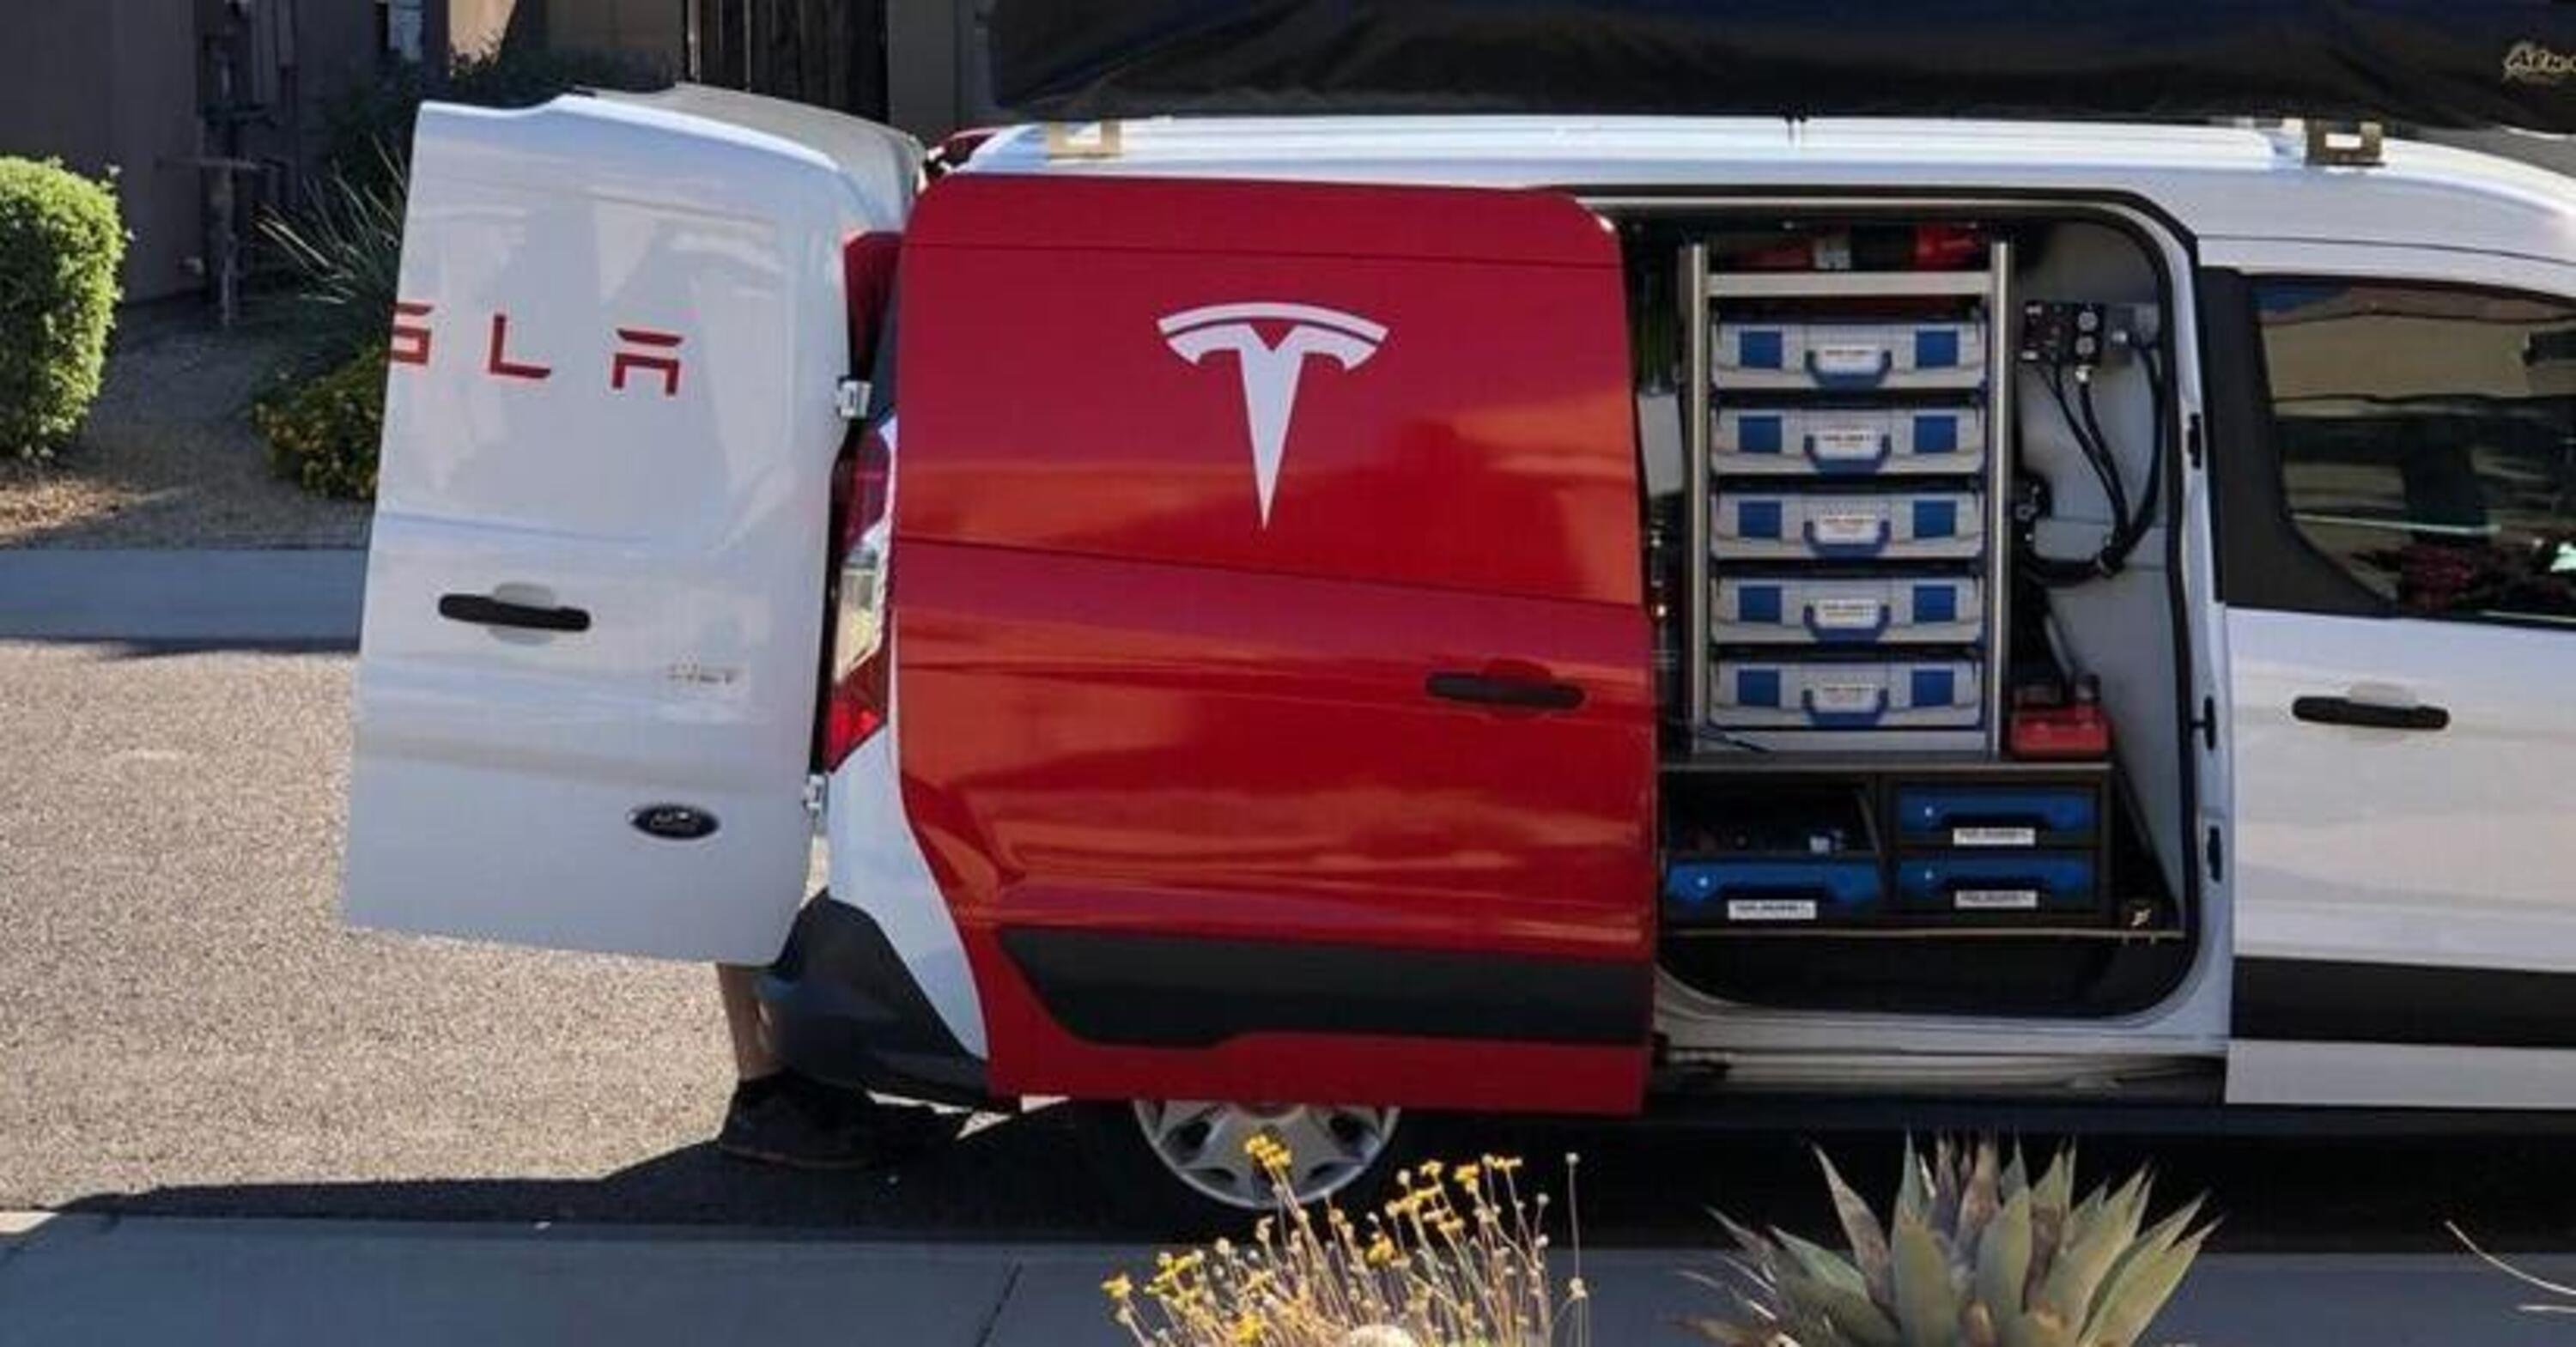 Batterie Tesla: conviene la sostituzione completa o una riparazione economica da terze parti? 